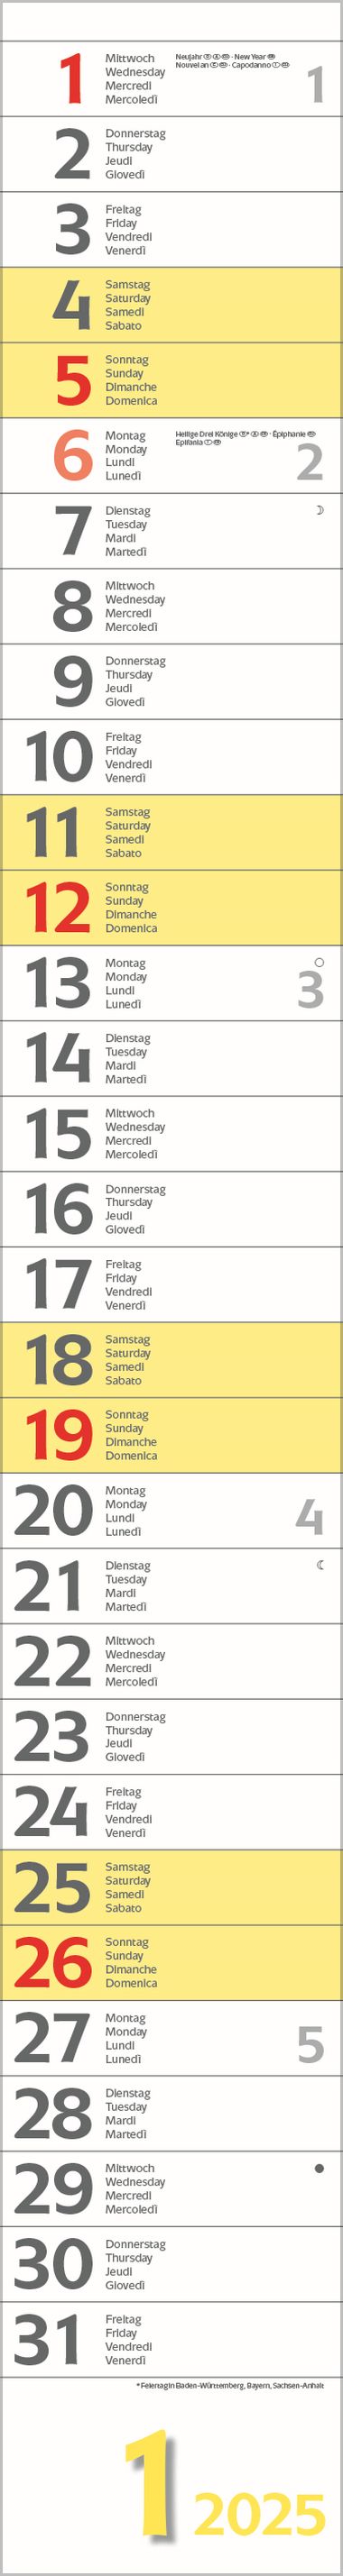  - Kalender - Office Kalender - Super Long